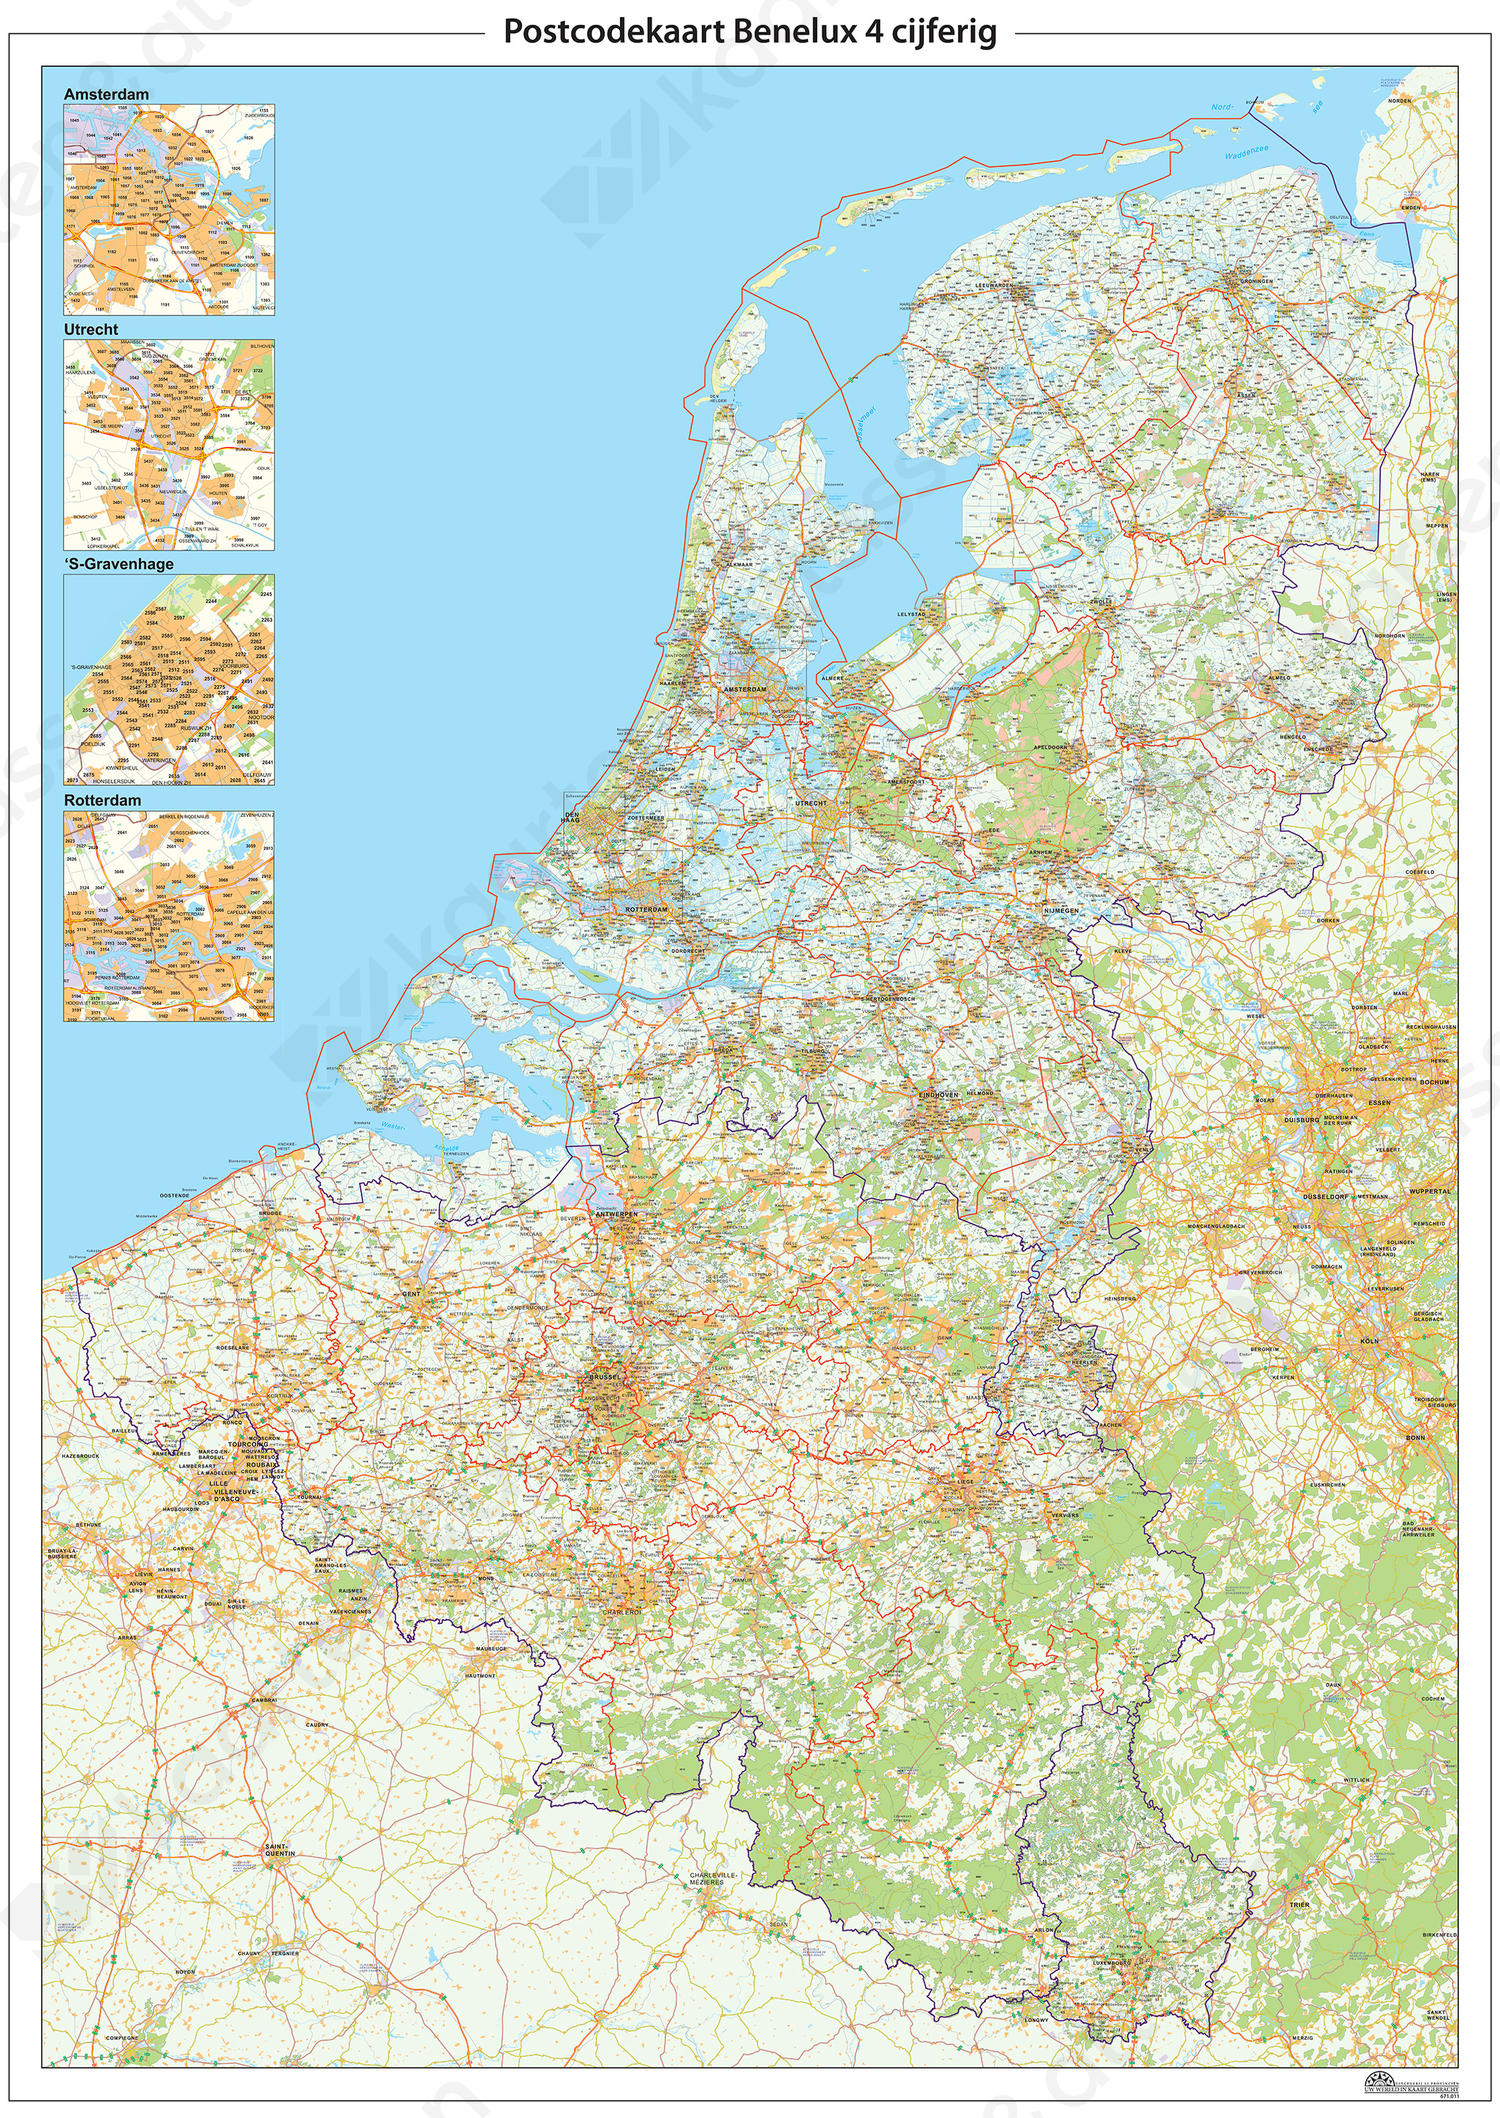 Postcodekaart Benelux 4-cijferig